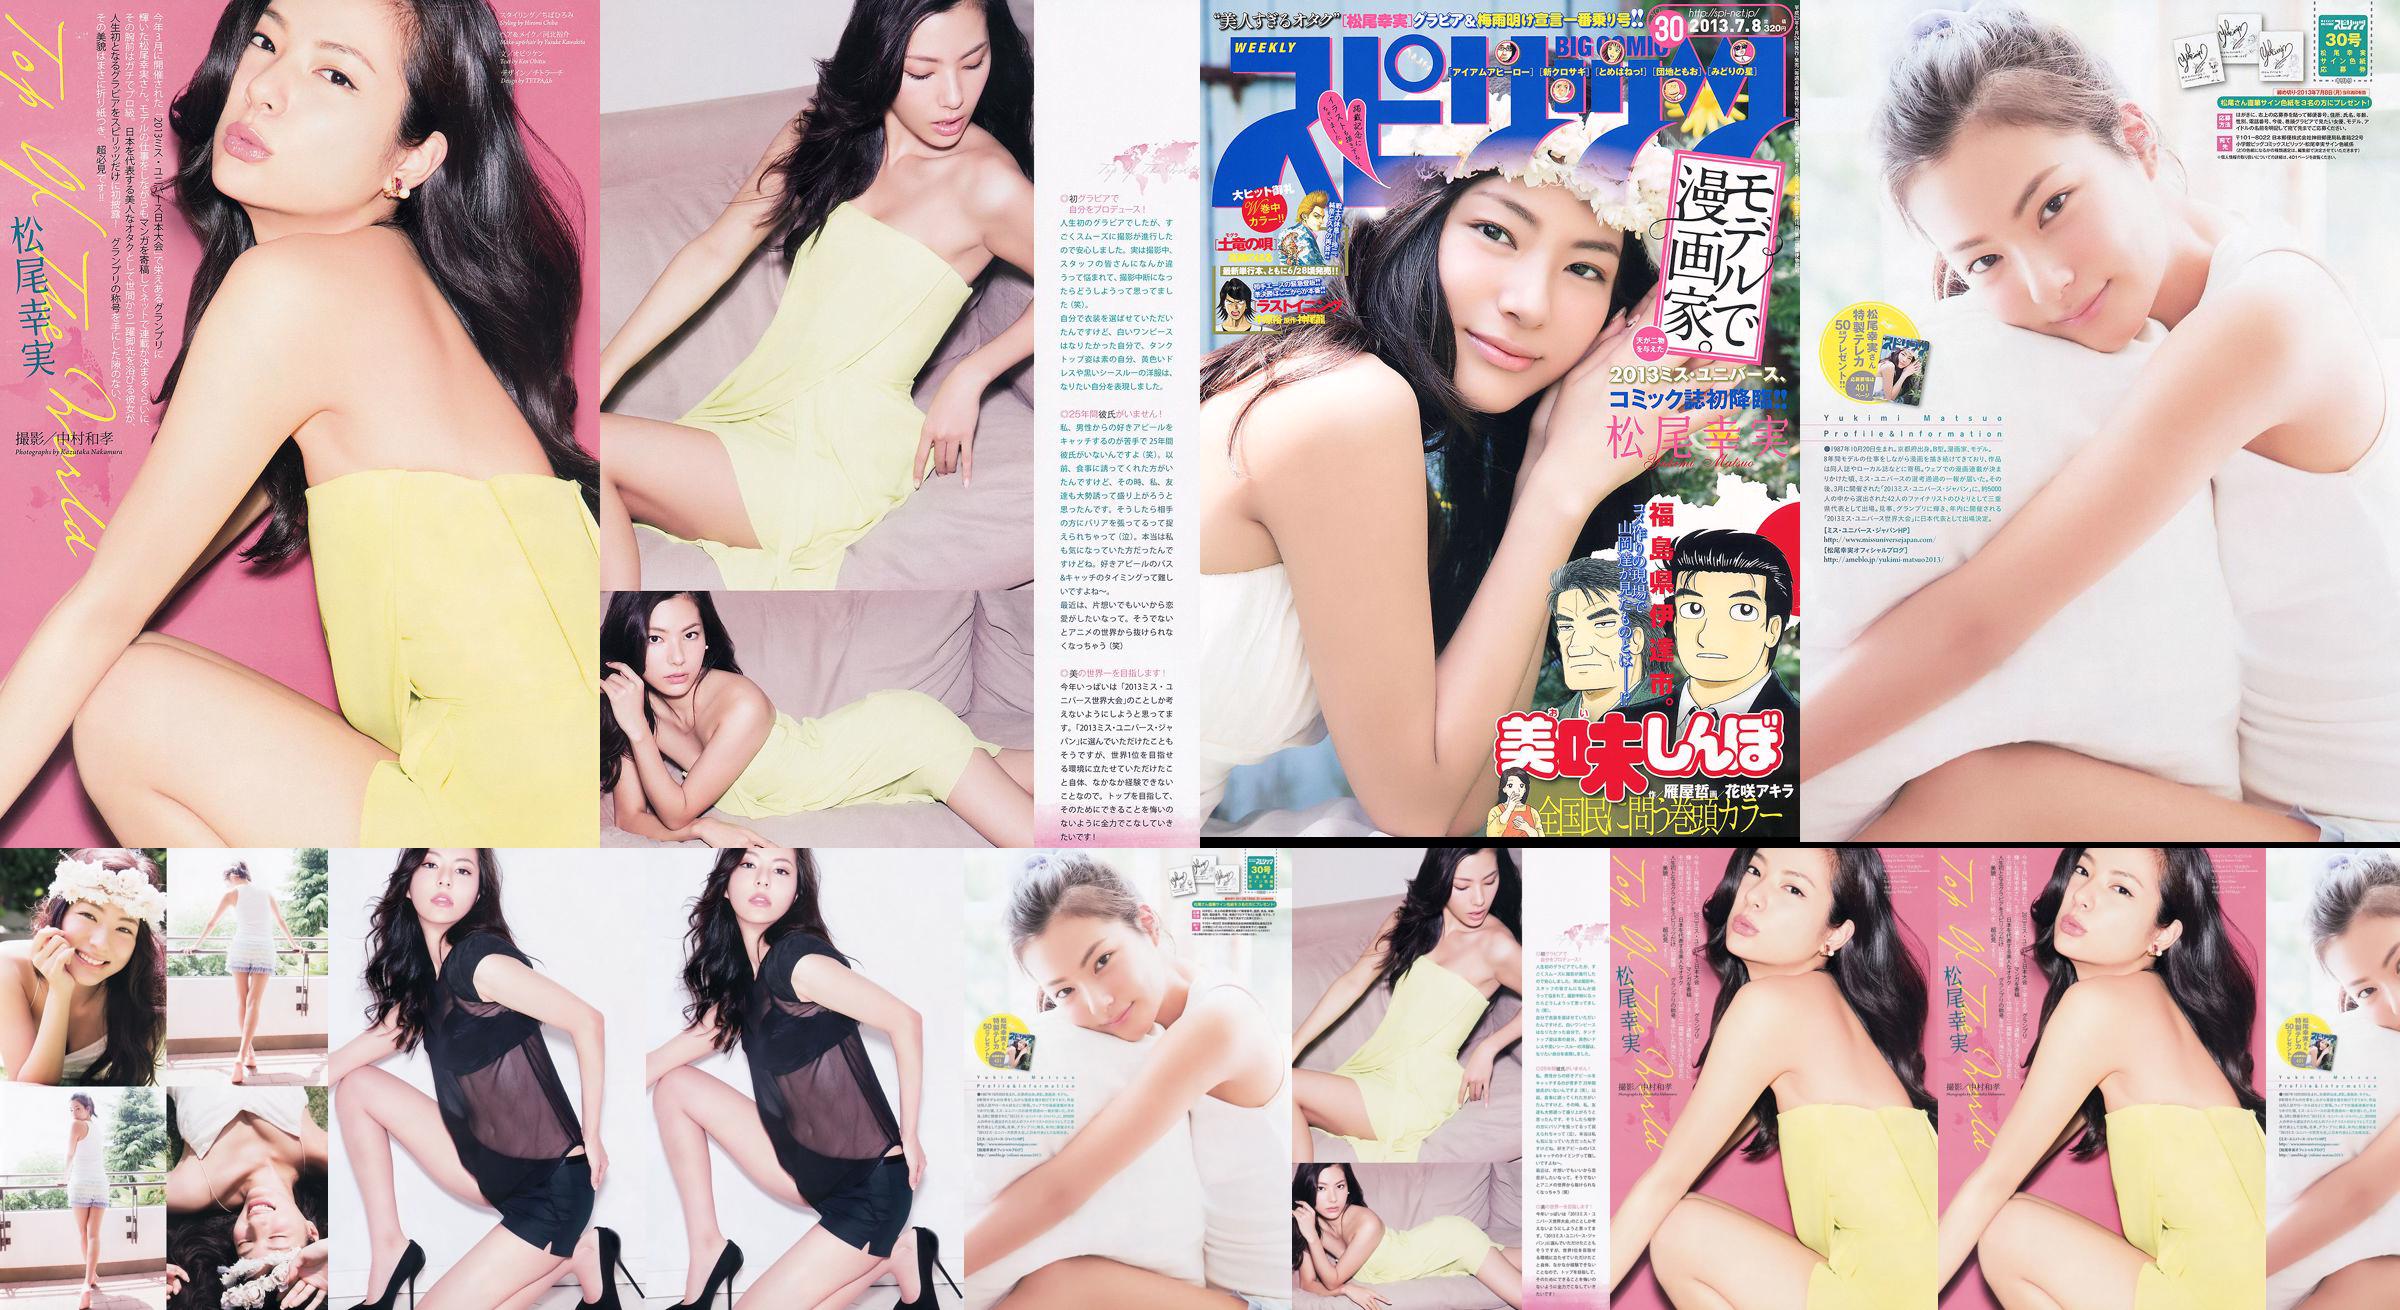 [Weekly Big Comic Spirits] Komi Matsuo 2013 No.30 Photo Magazine No.f3a22f Page 3